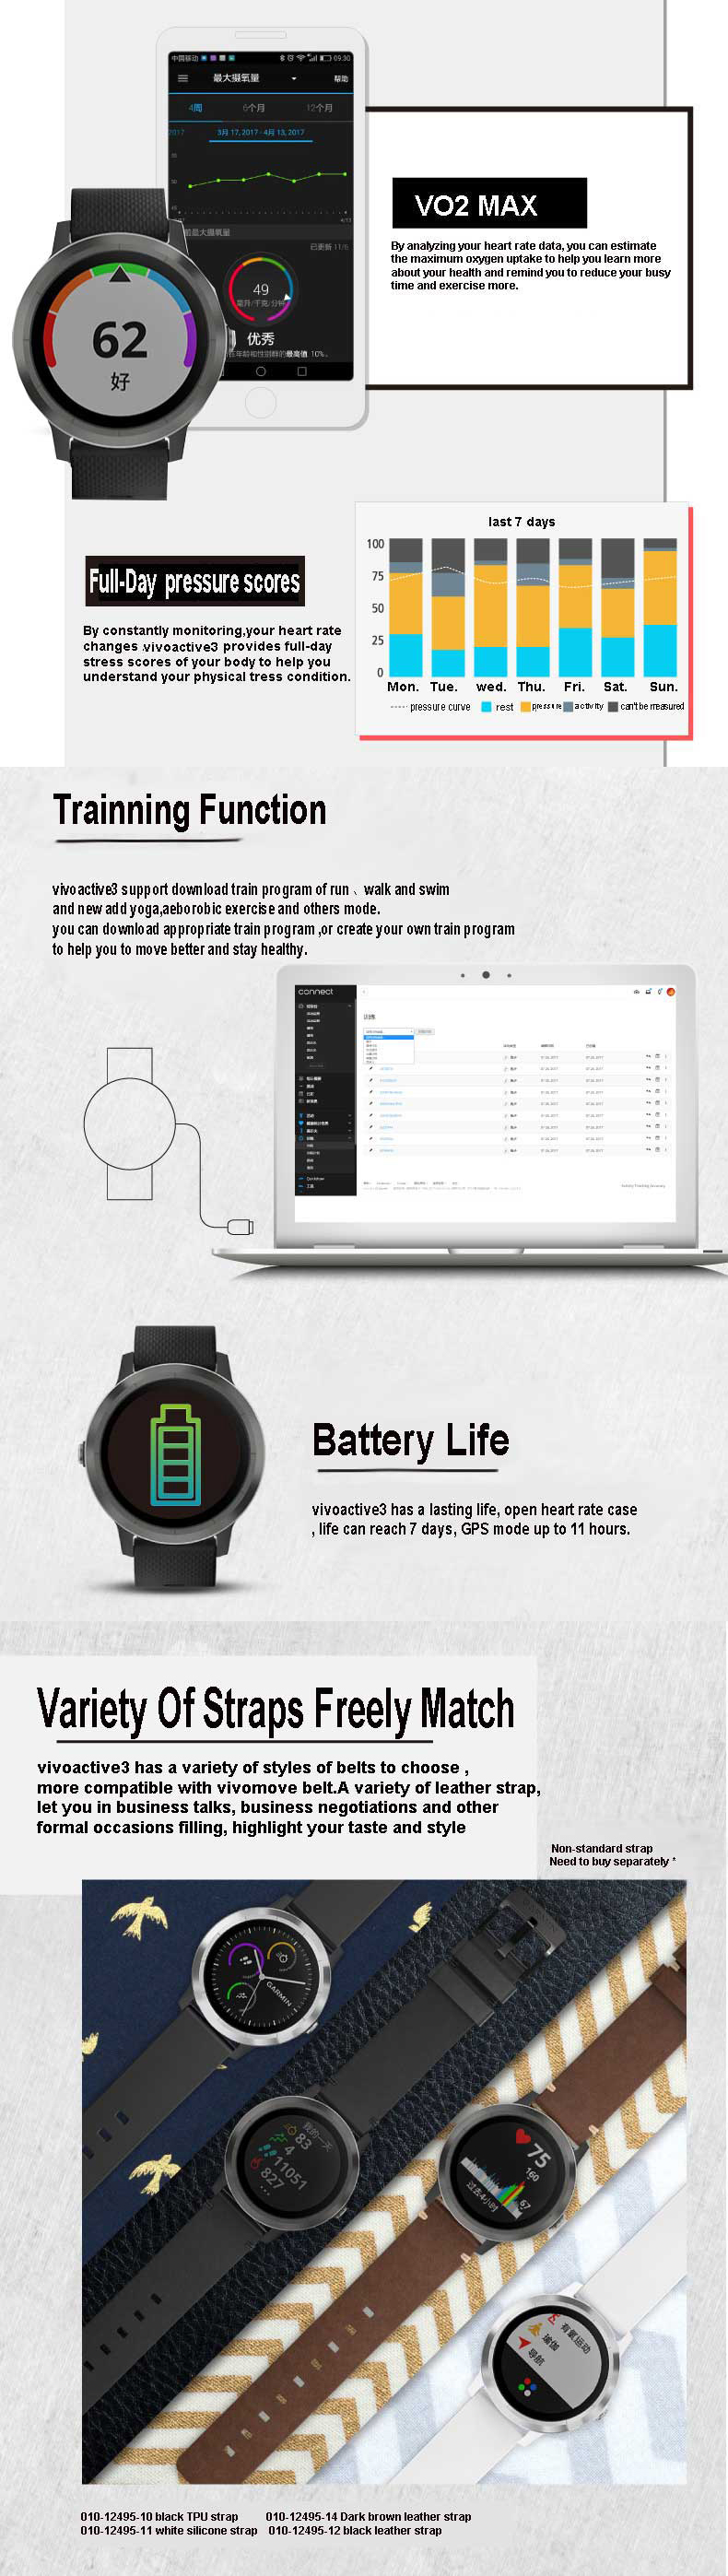 Garmin Vivoactive3 1.2Inch Touch Screen GPS+GLONASS Muti-sport Modes NFC Heart Rate Smart Watch 14